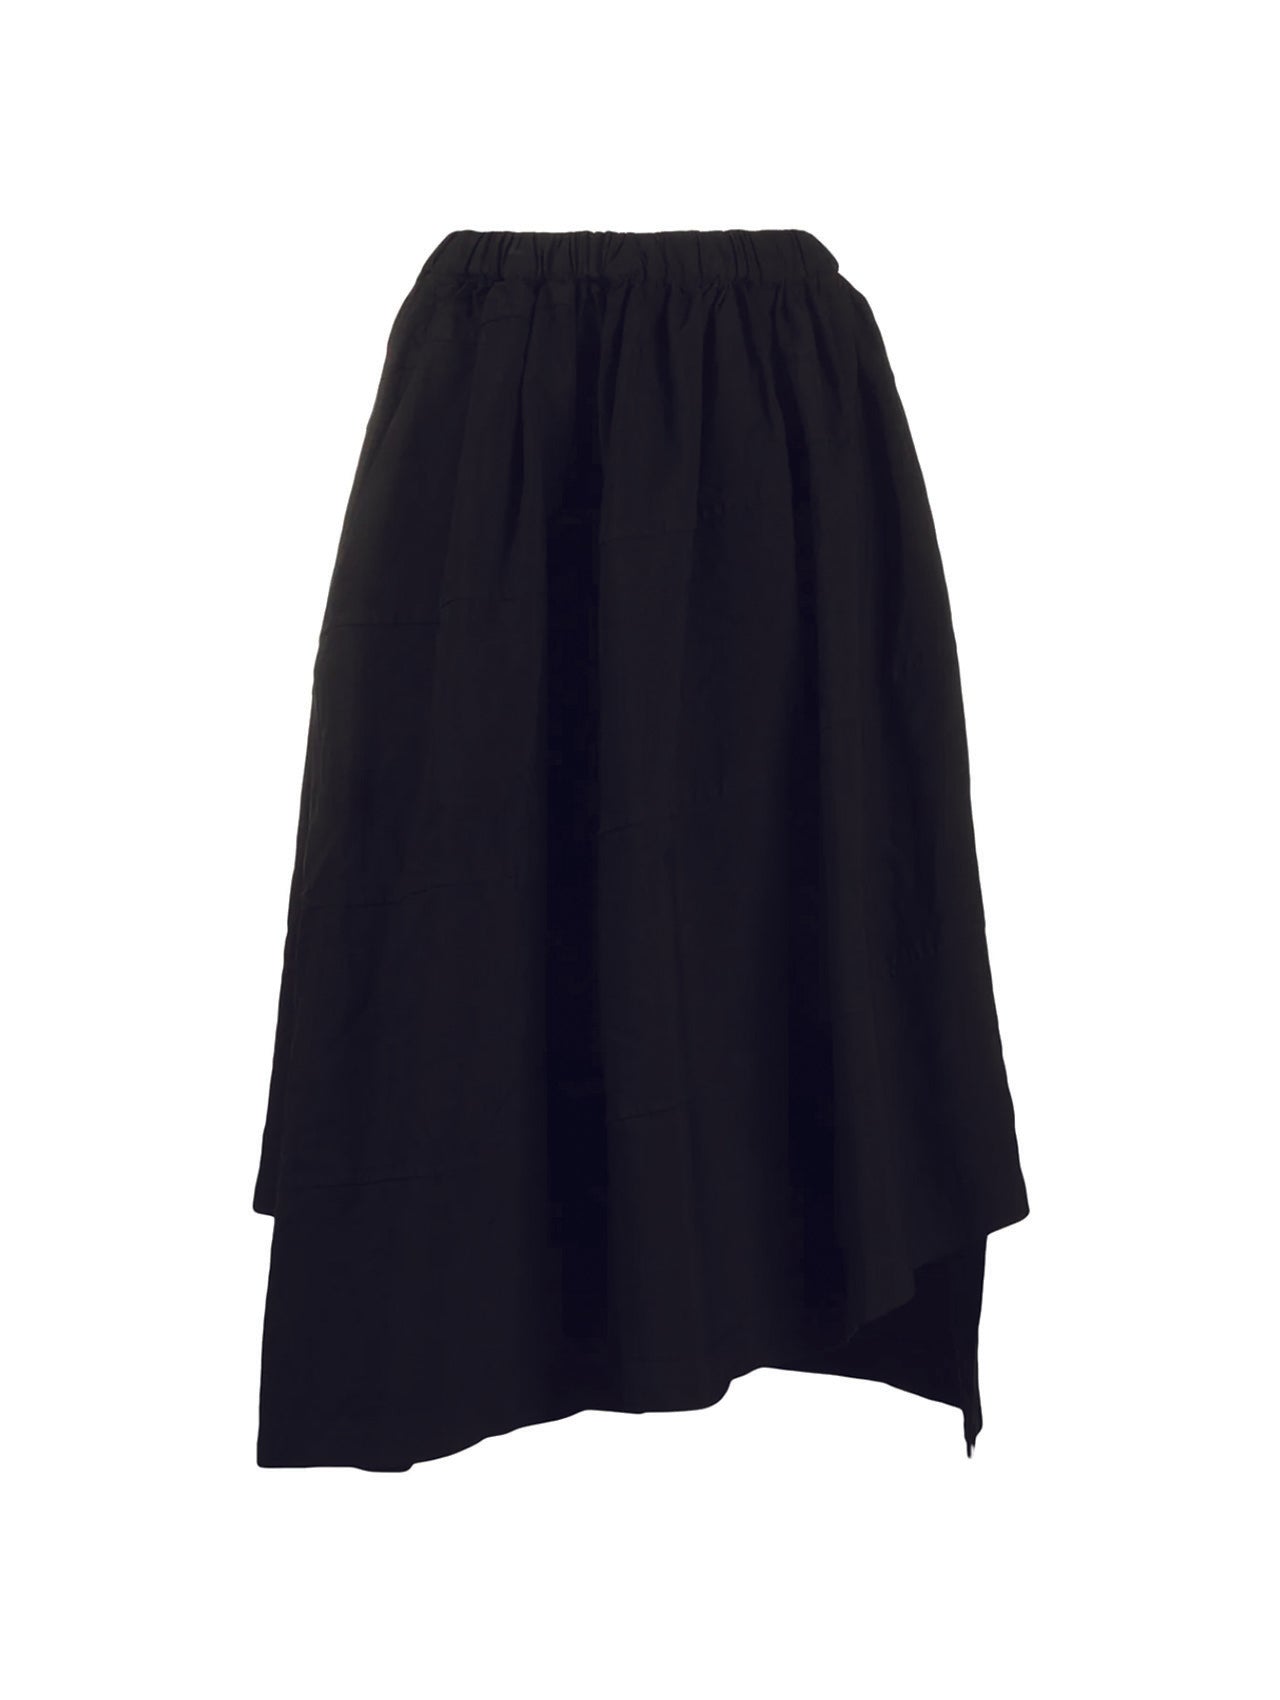 CDG CDG Black Asymmetric Skirt